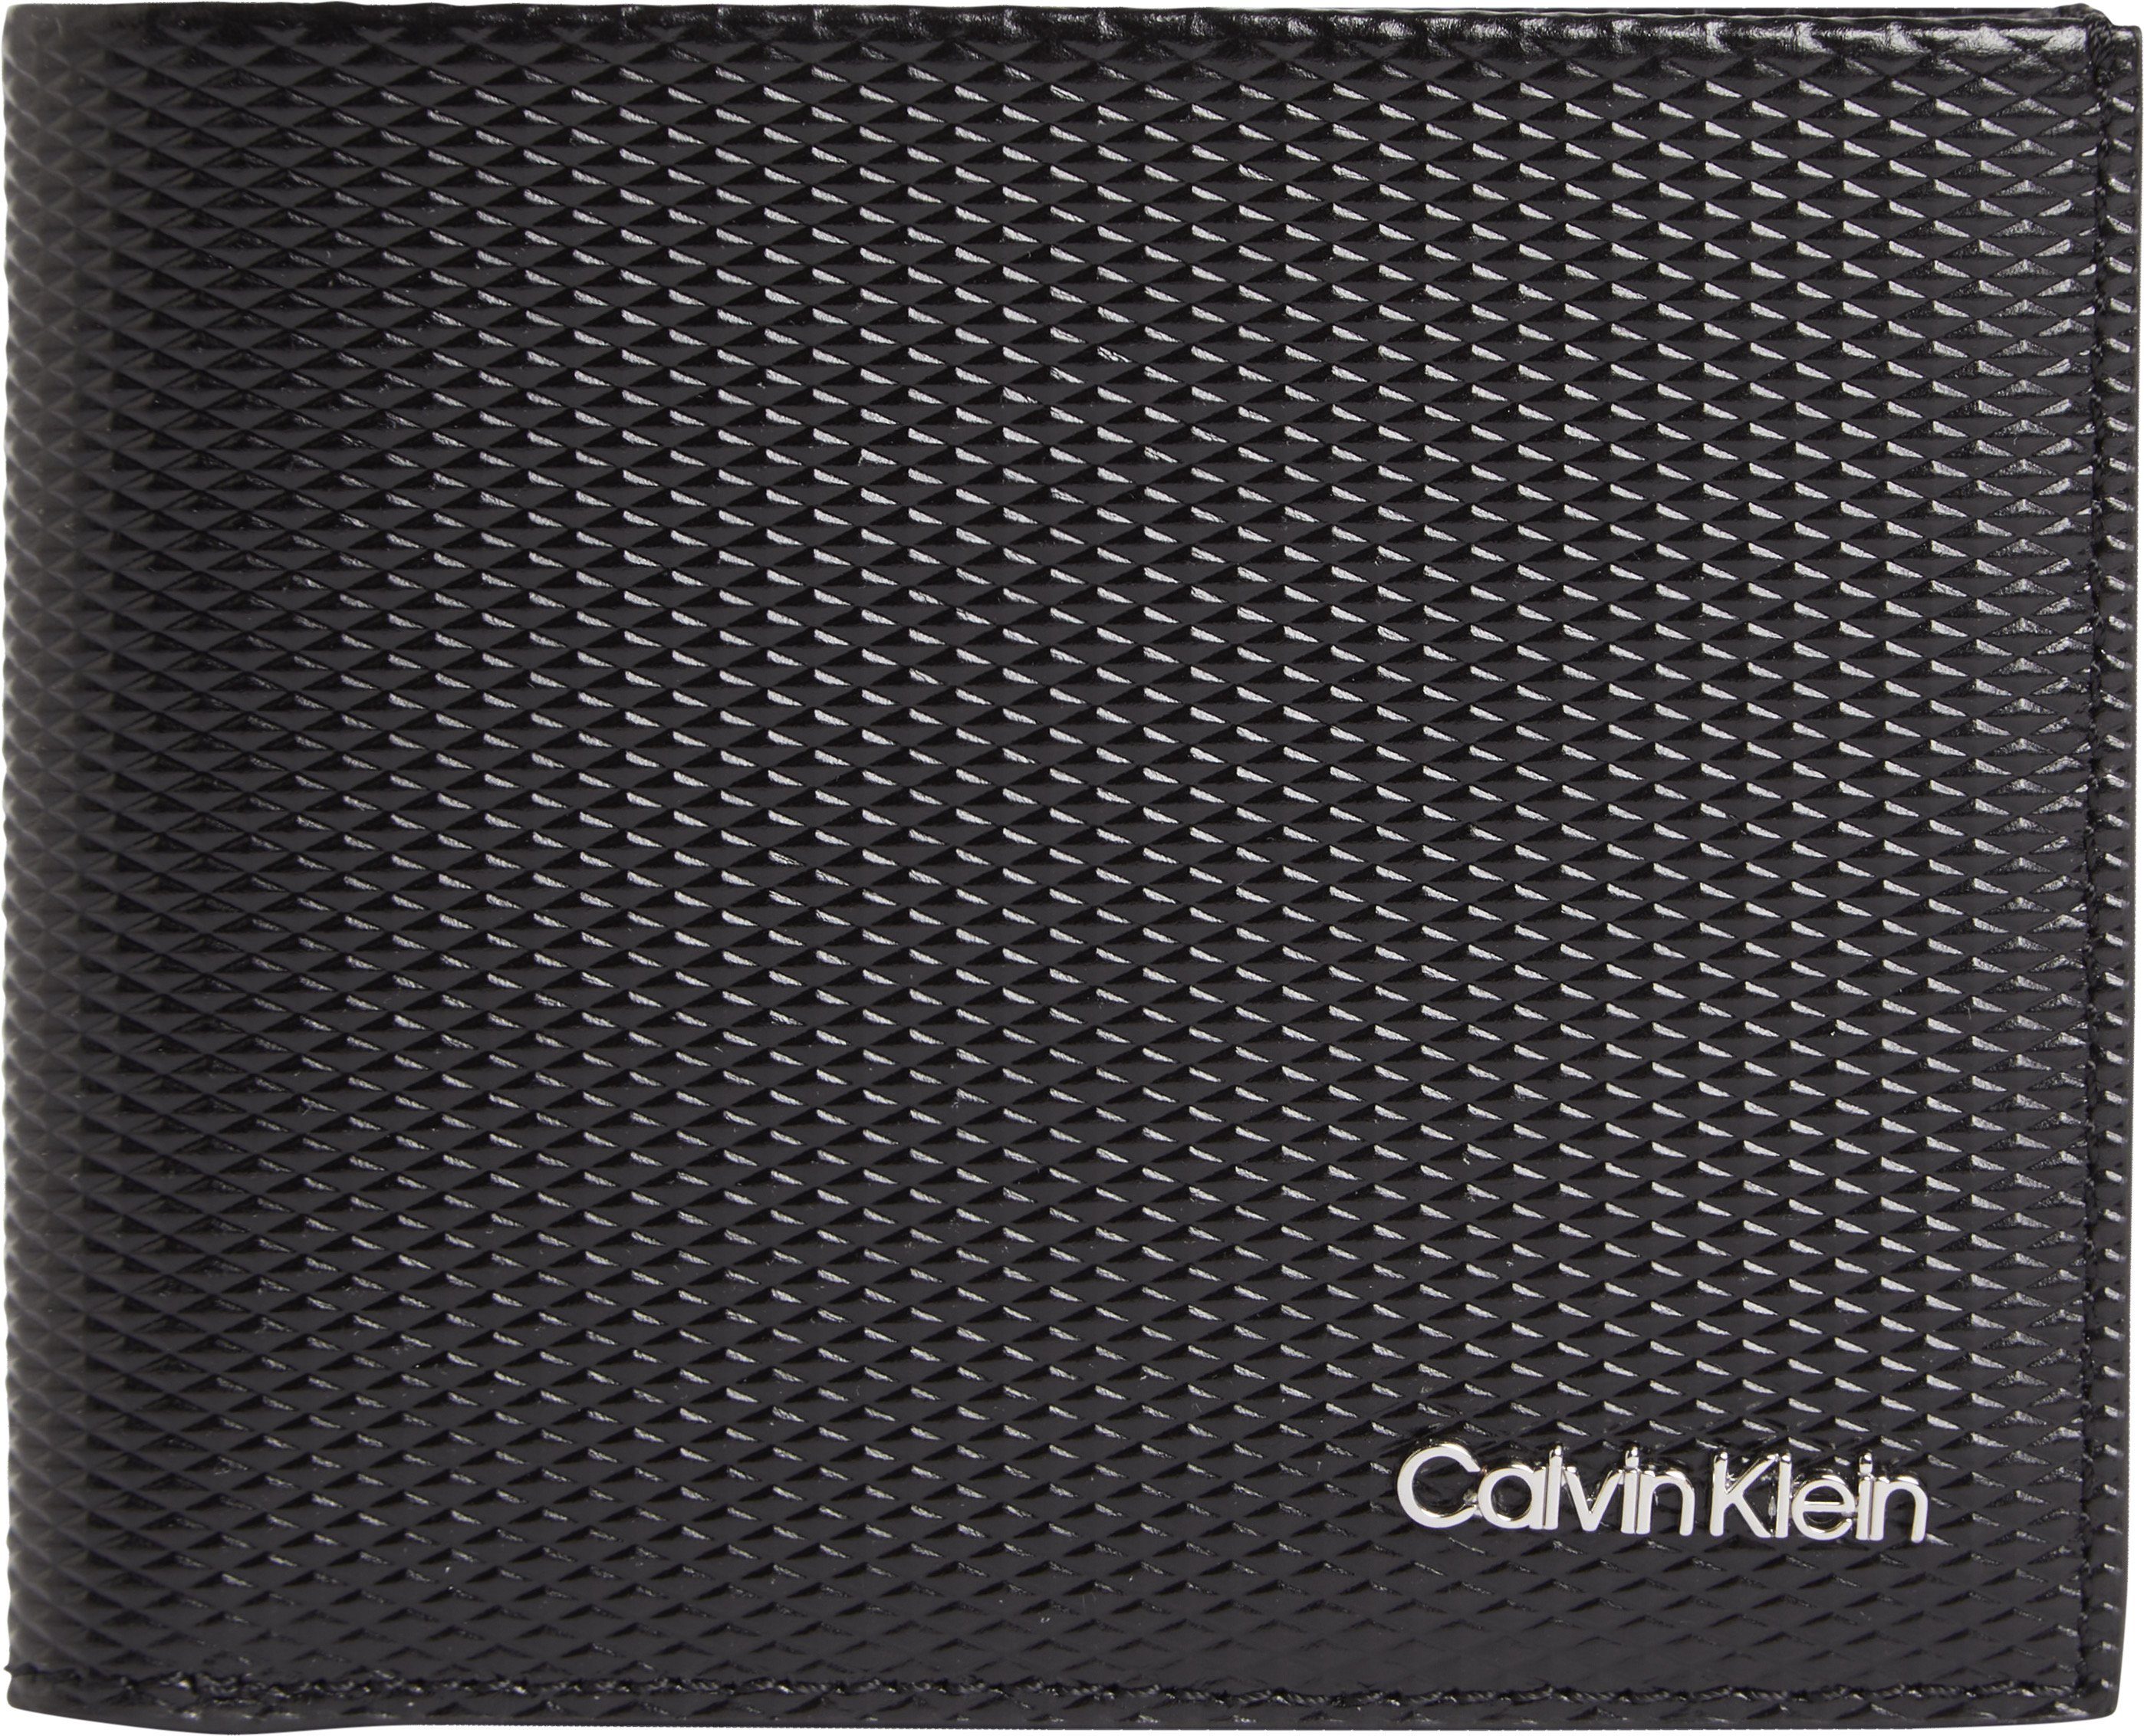 Calvin Klein Herren Geldbörsen online kaufen | OTTO